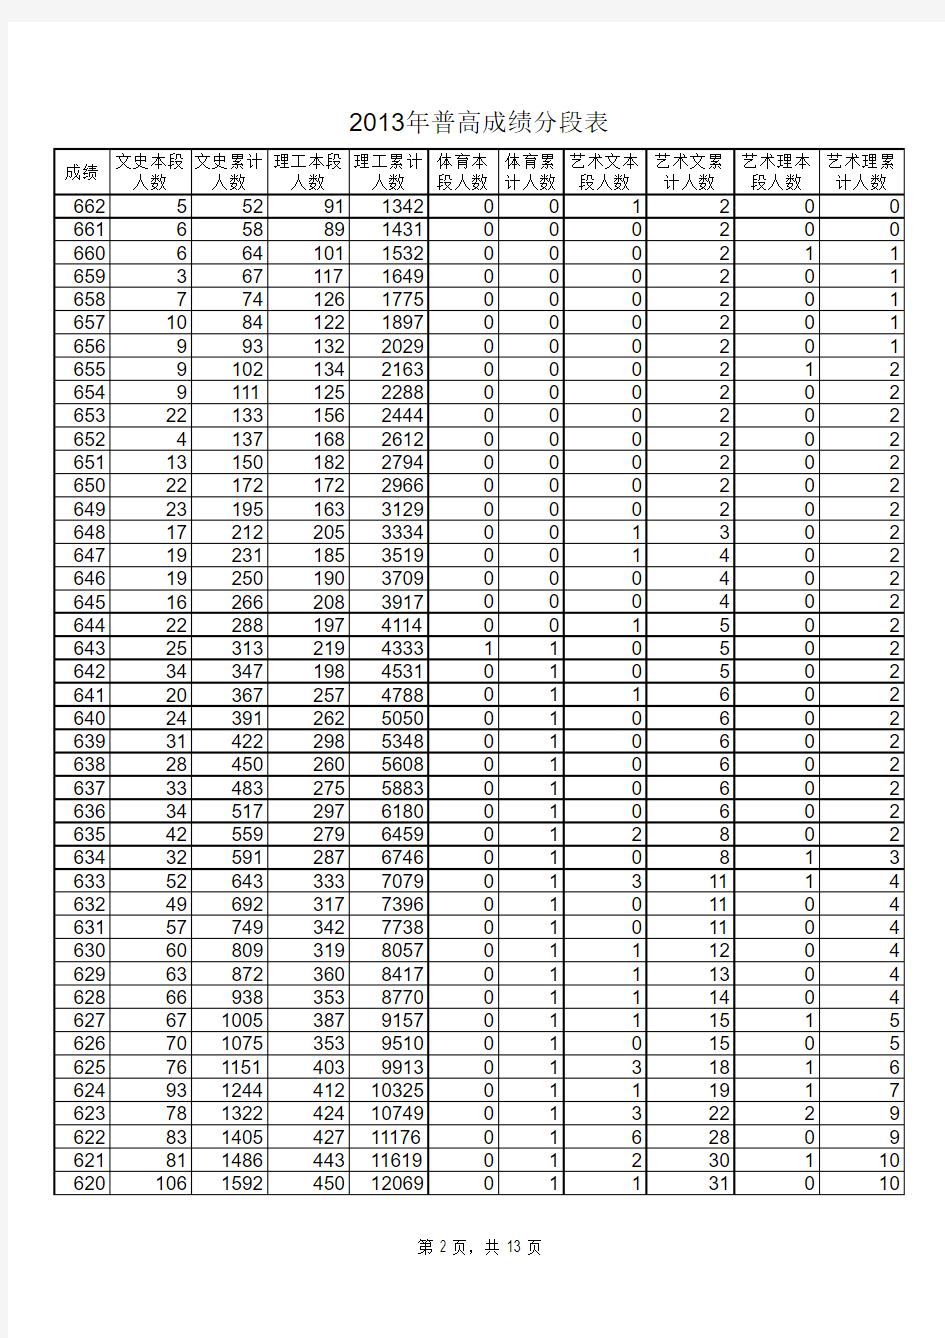 山东省2013年高考分数段统计表